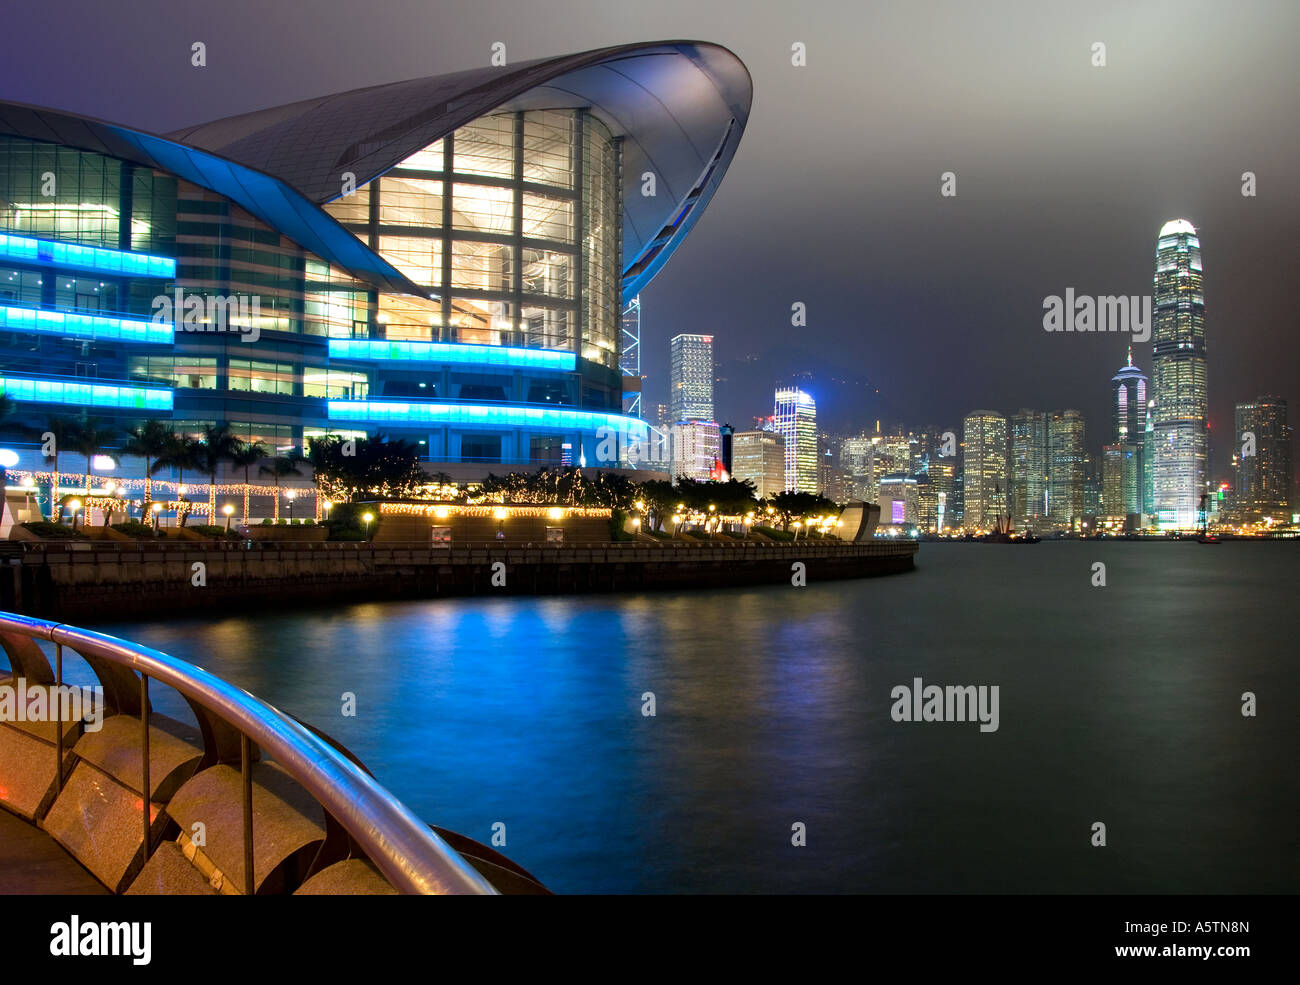 Hong Kong Exhibition and Convention Centre and IFC2 at Night, Wan Chai, Hong Kong, China, Asia Stock Photo